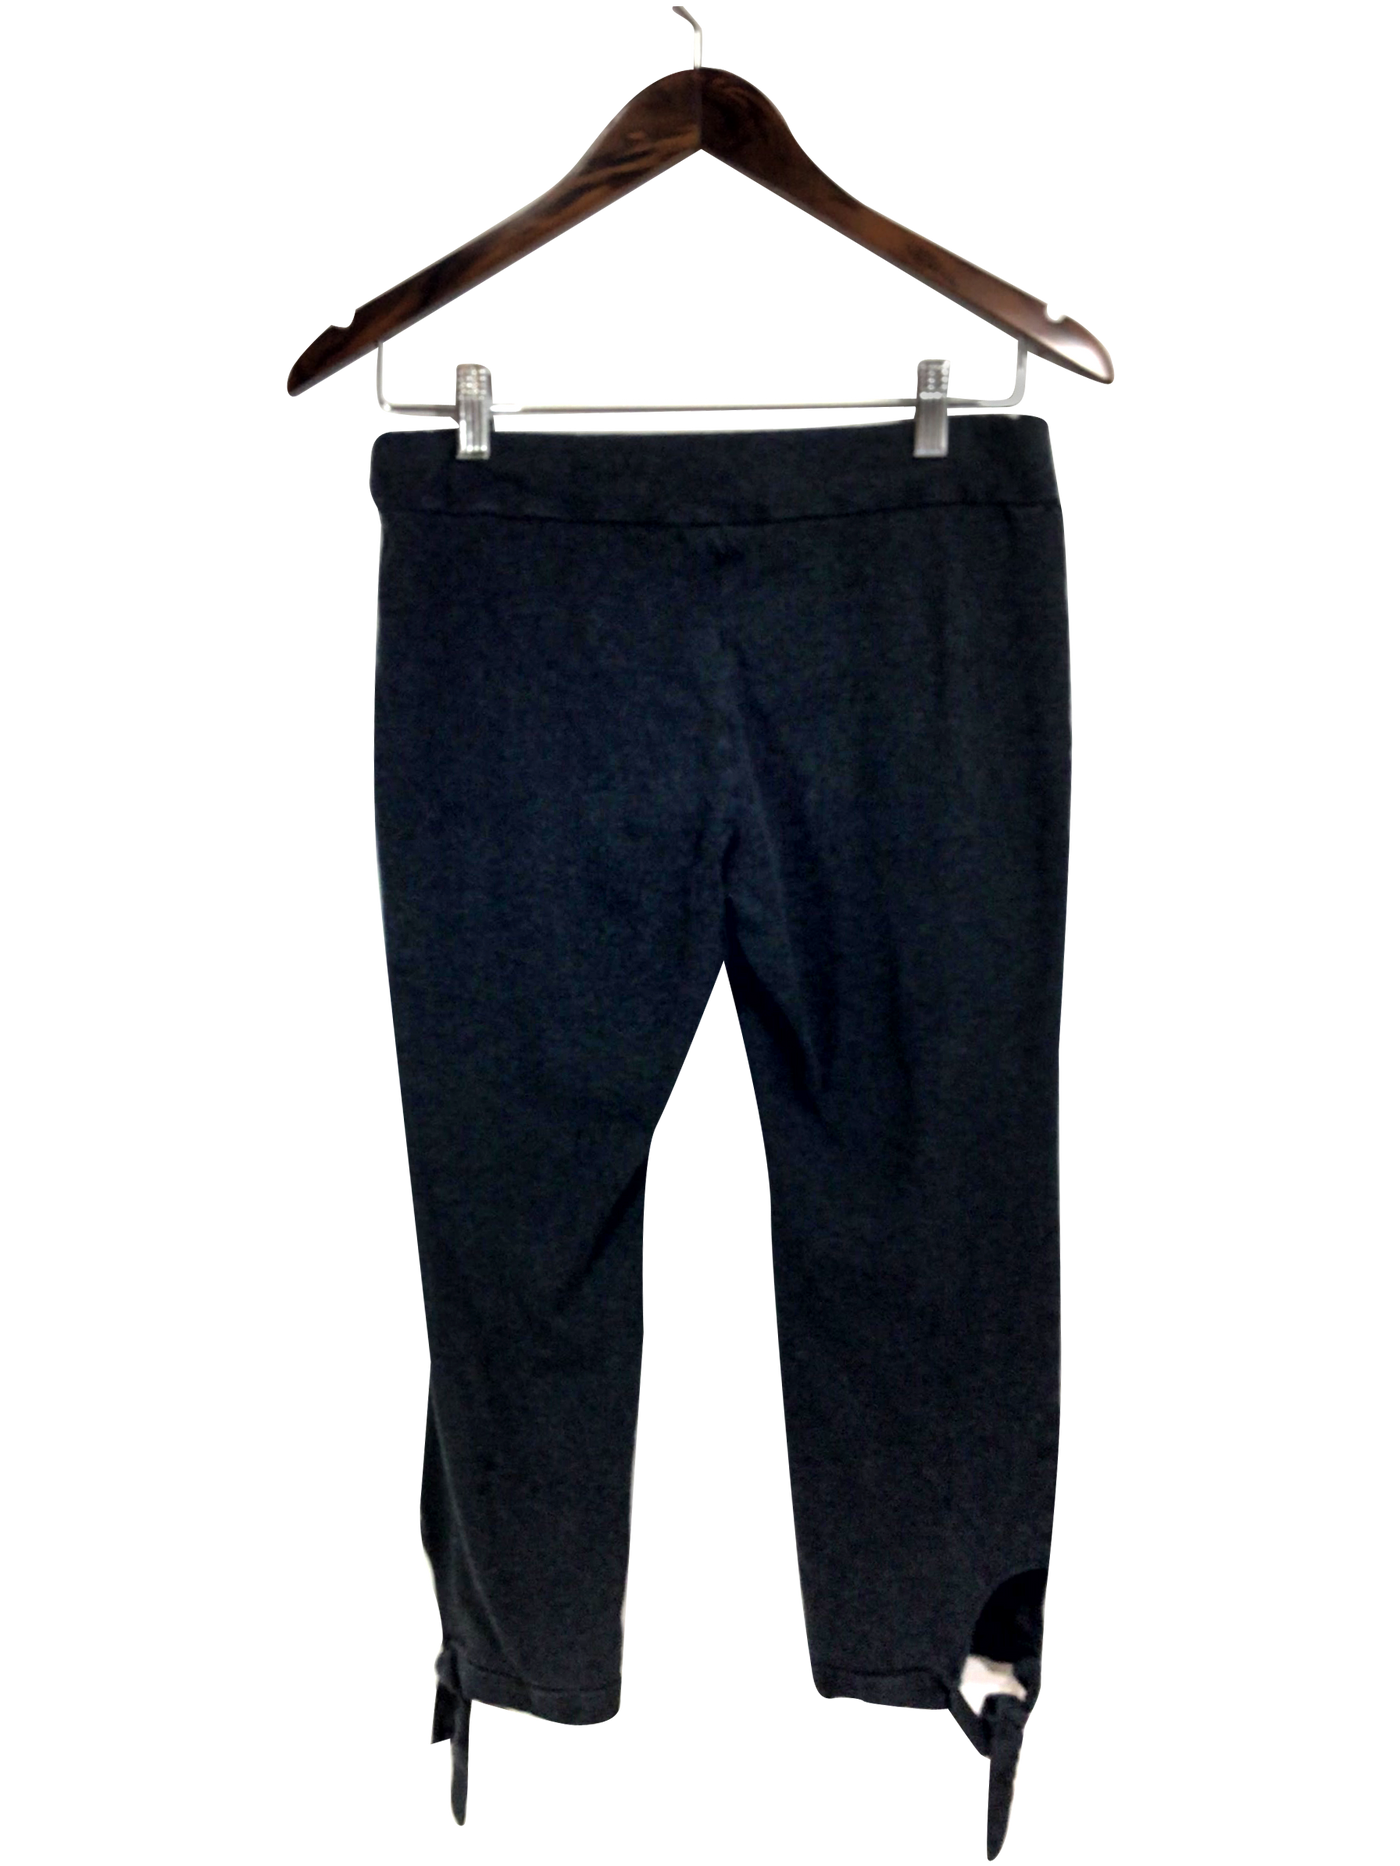 SPORTEK Regular fit Activewear Legging in Gray - Size M | 15 $ KOOP